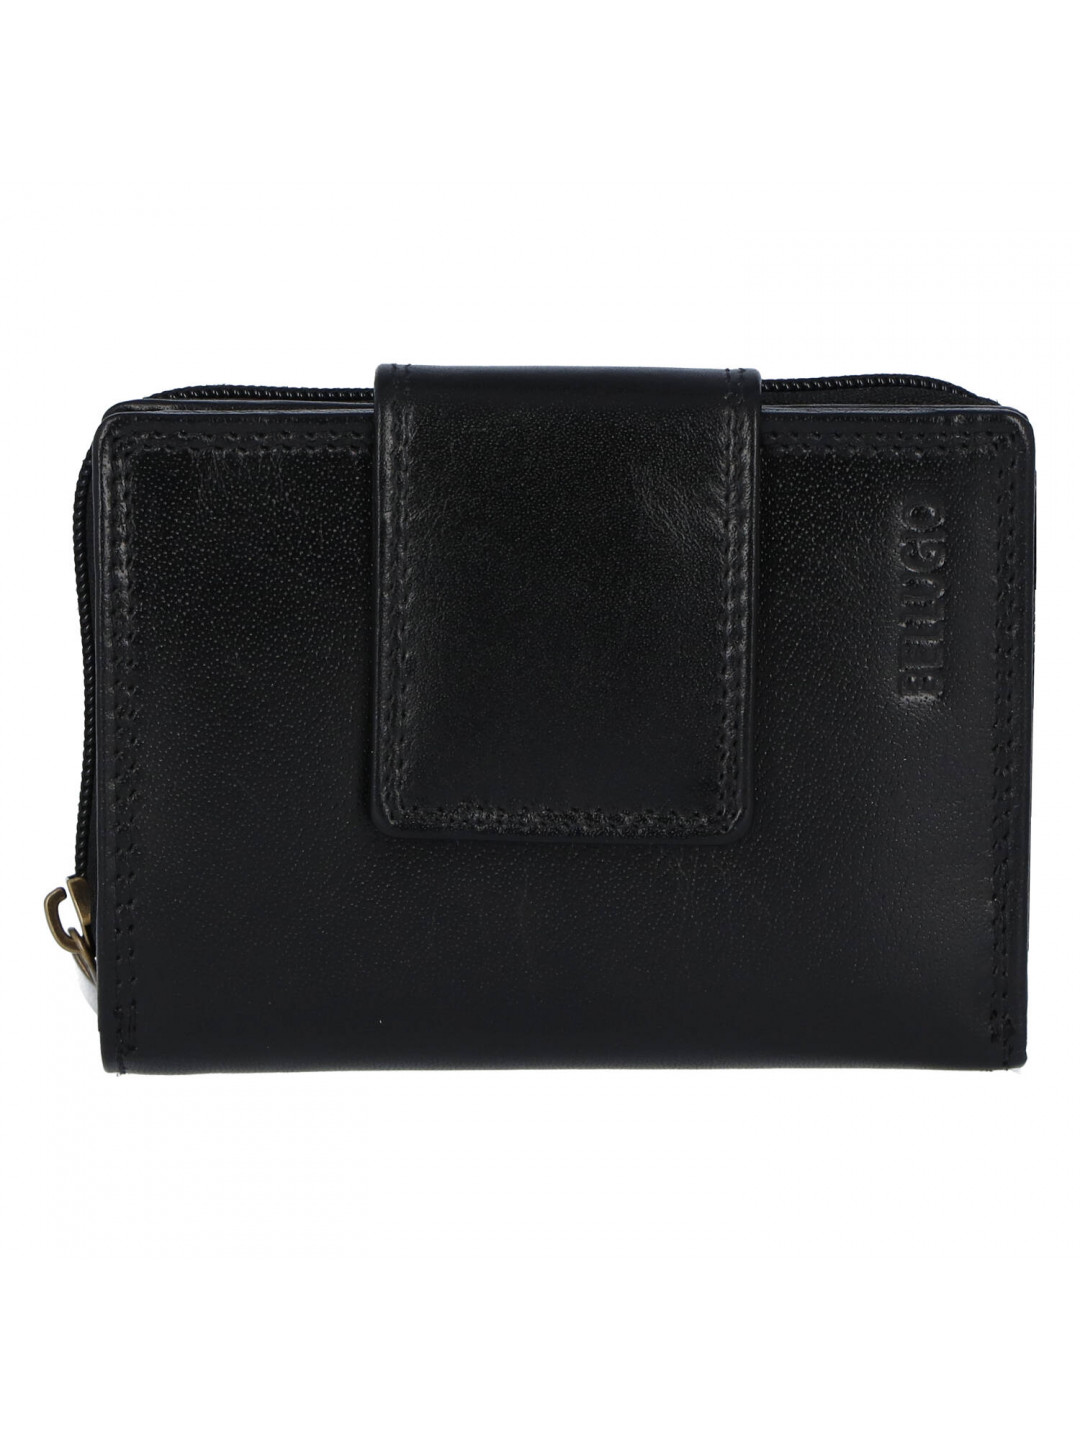 Menší a praktická dámská kožená peněženka Tina černá